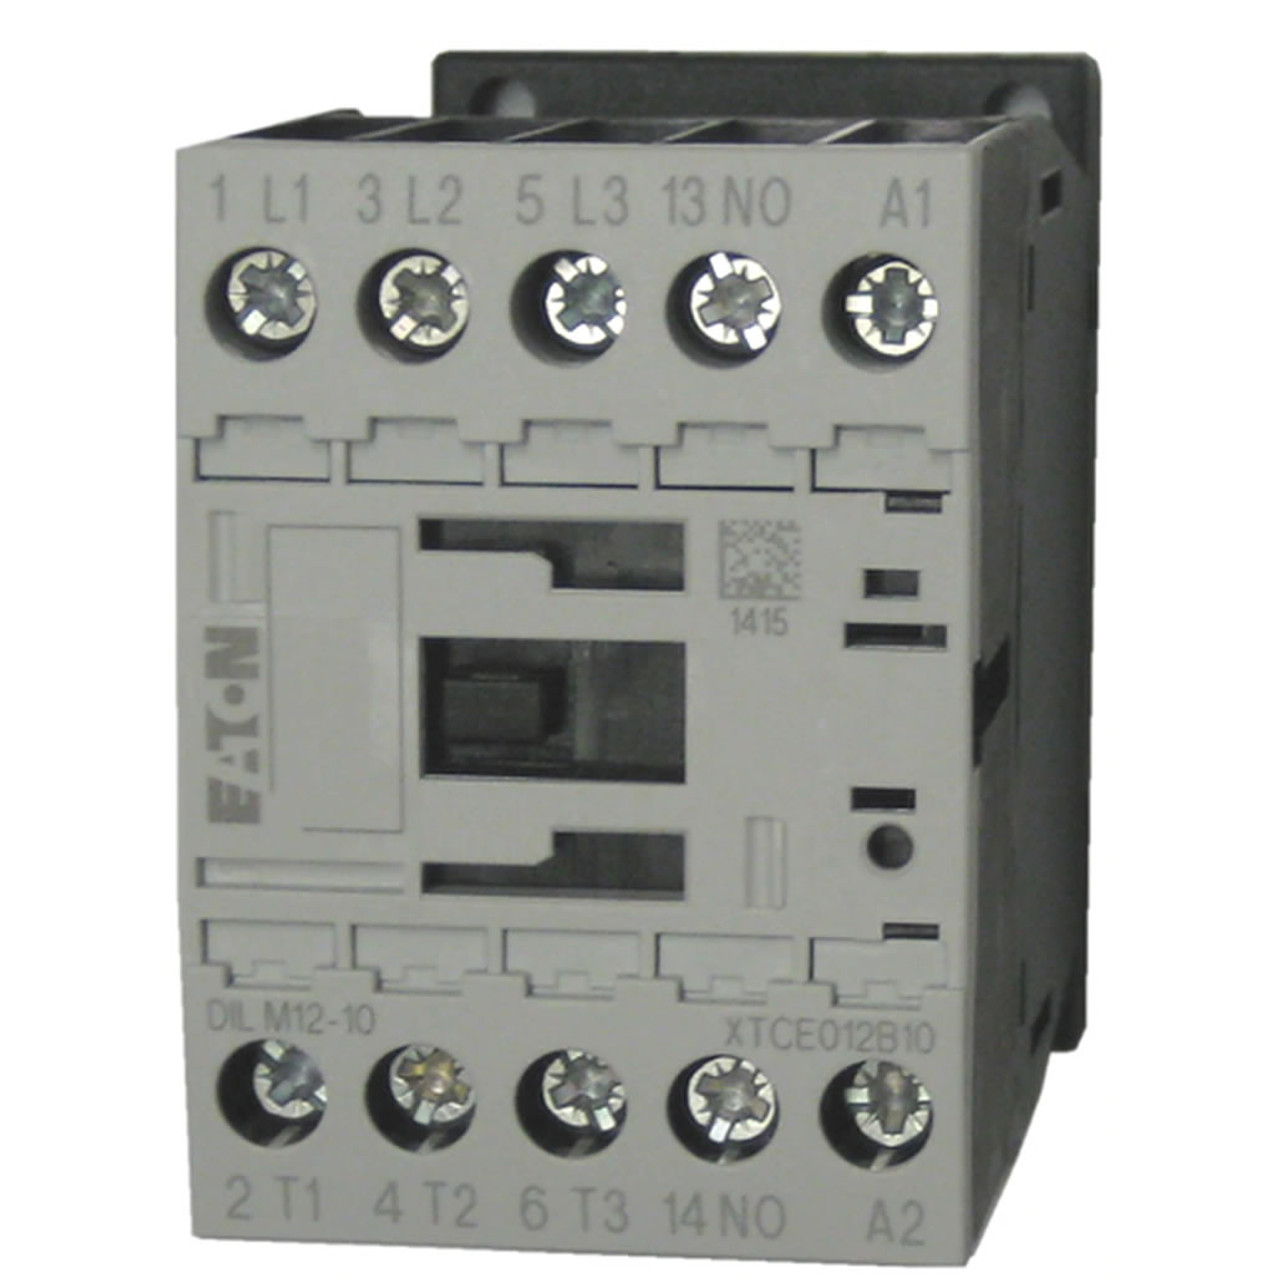 Eaton XTCE012B10C contactor